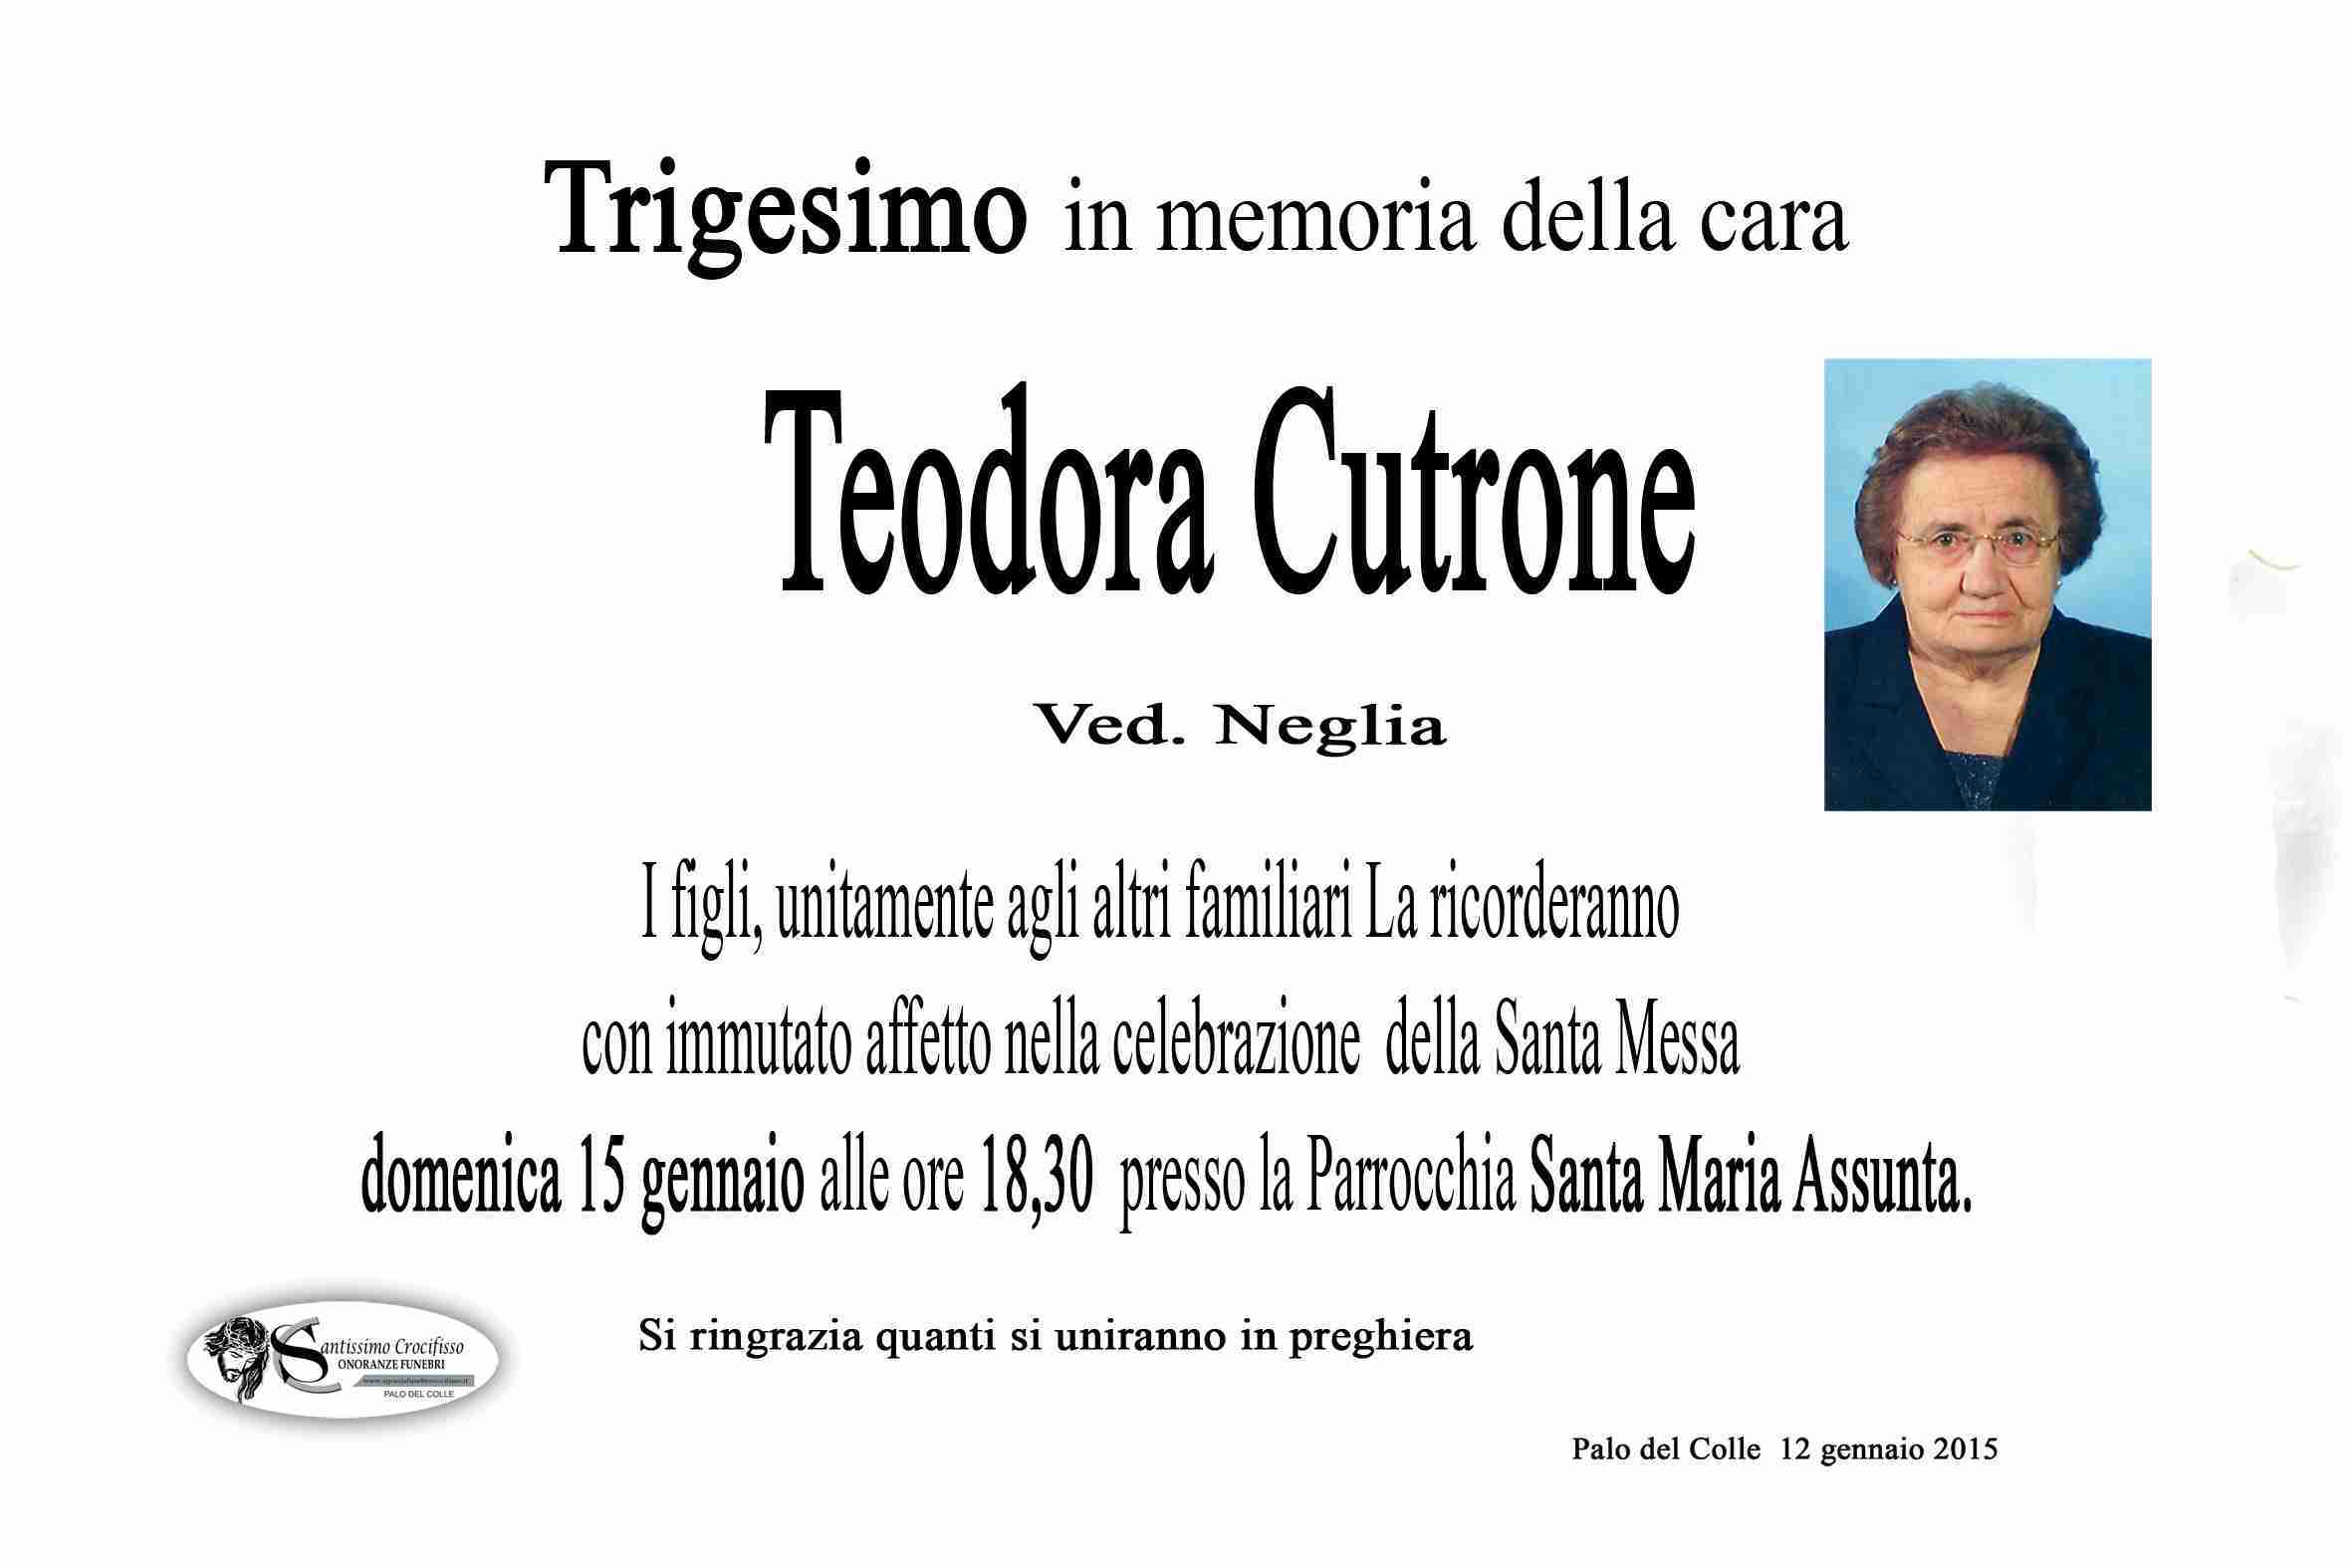 Teodora Cutrone